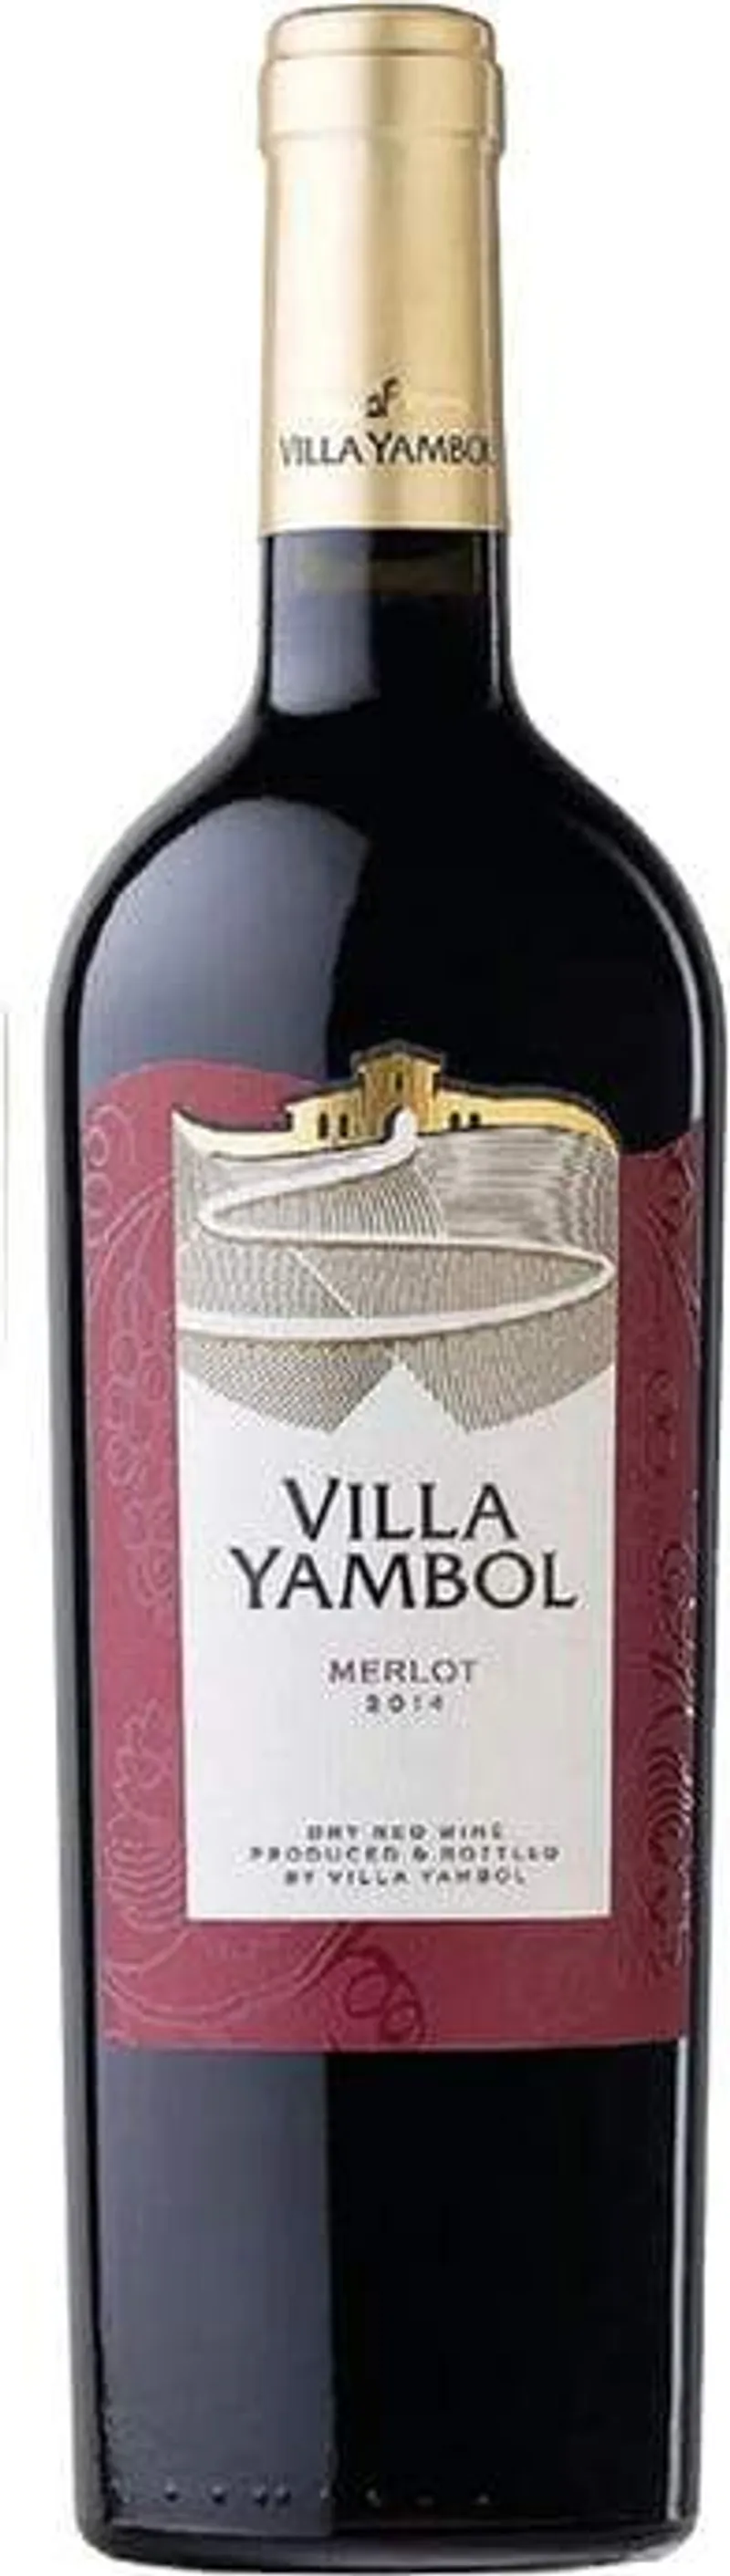 Вино Червено Вила Ямбол Мерло (750мл)